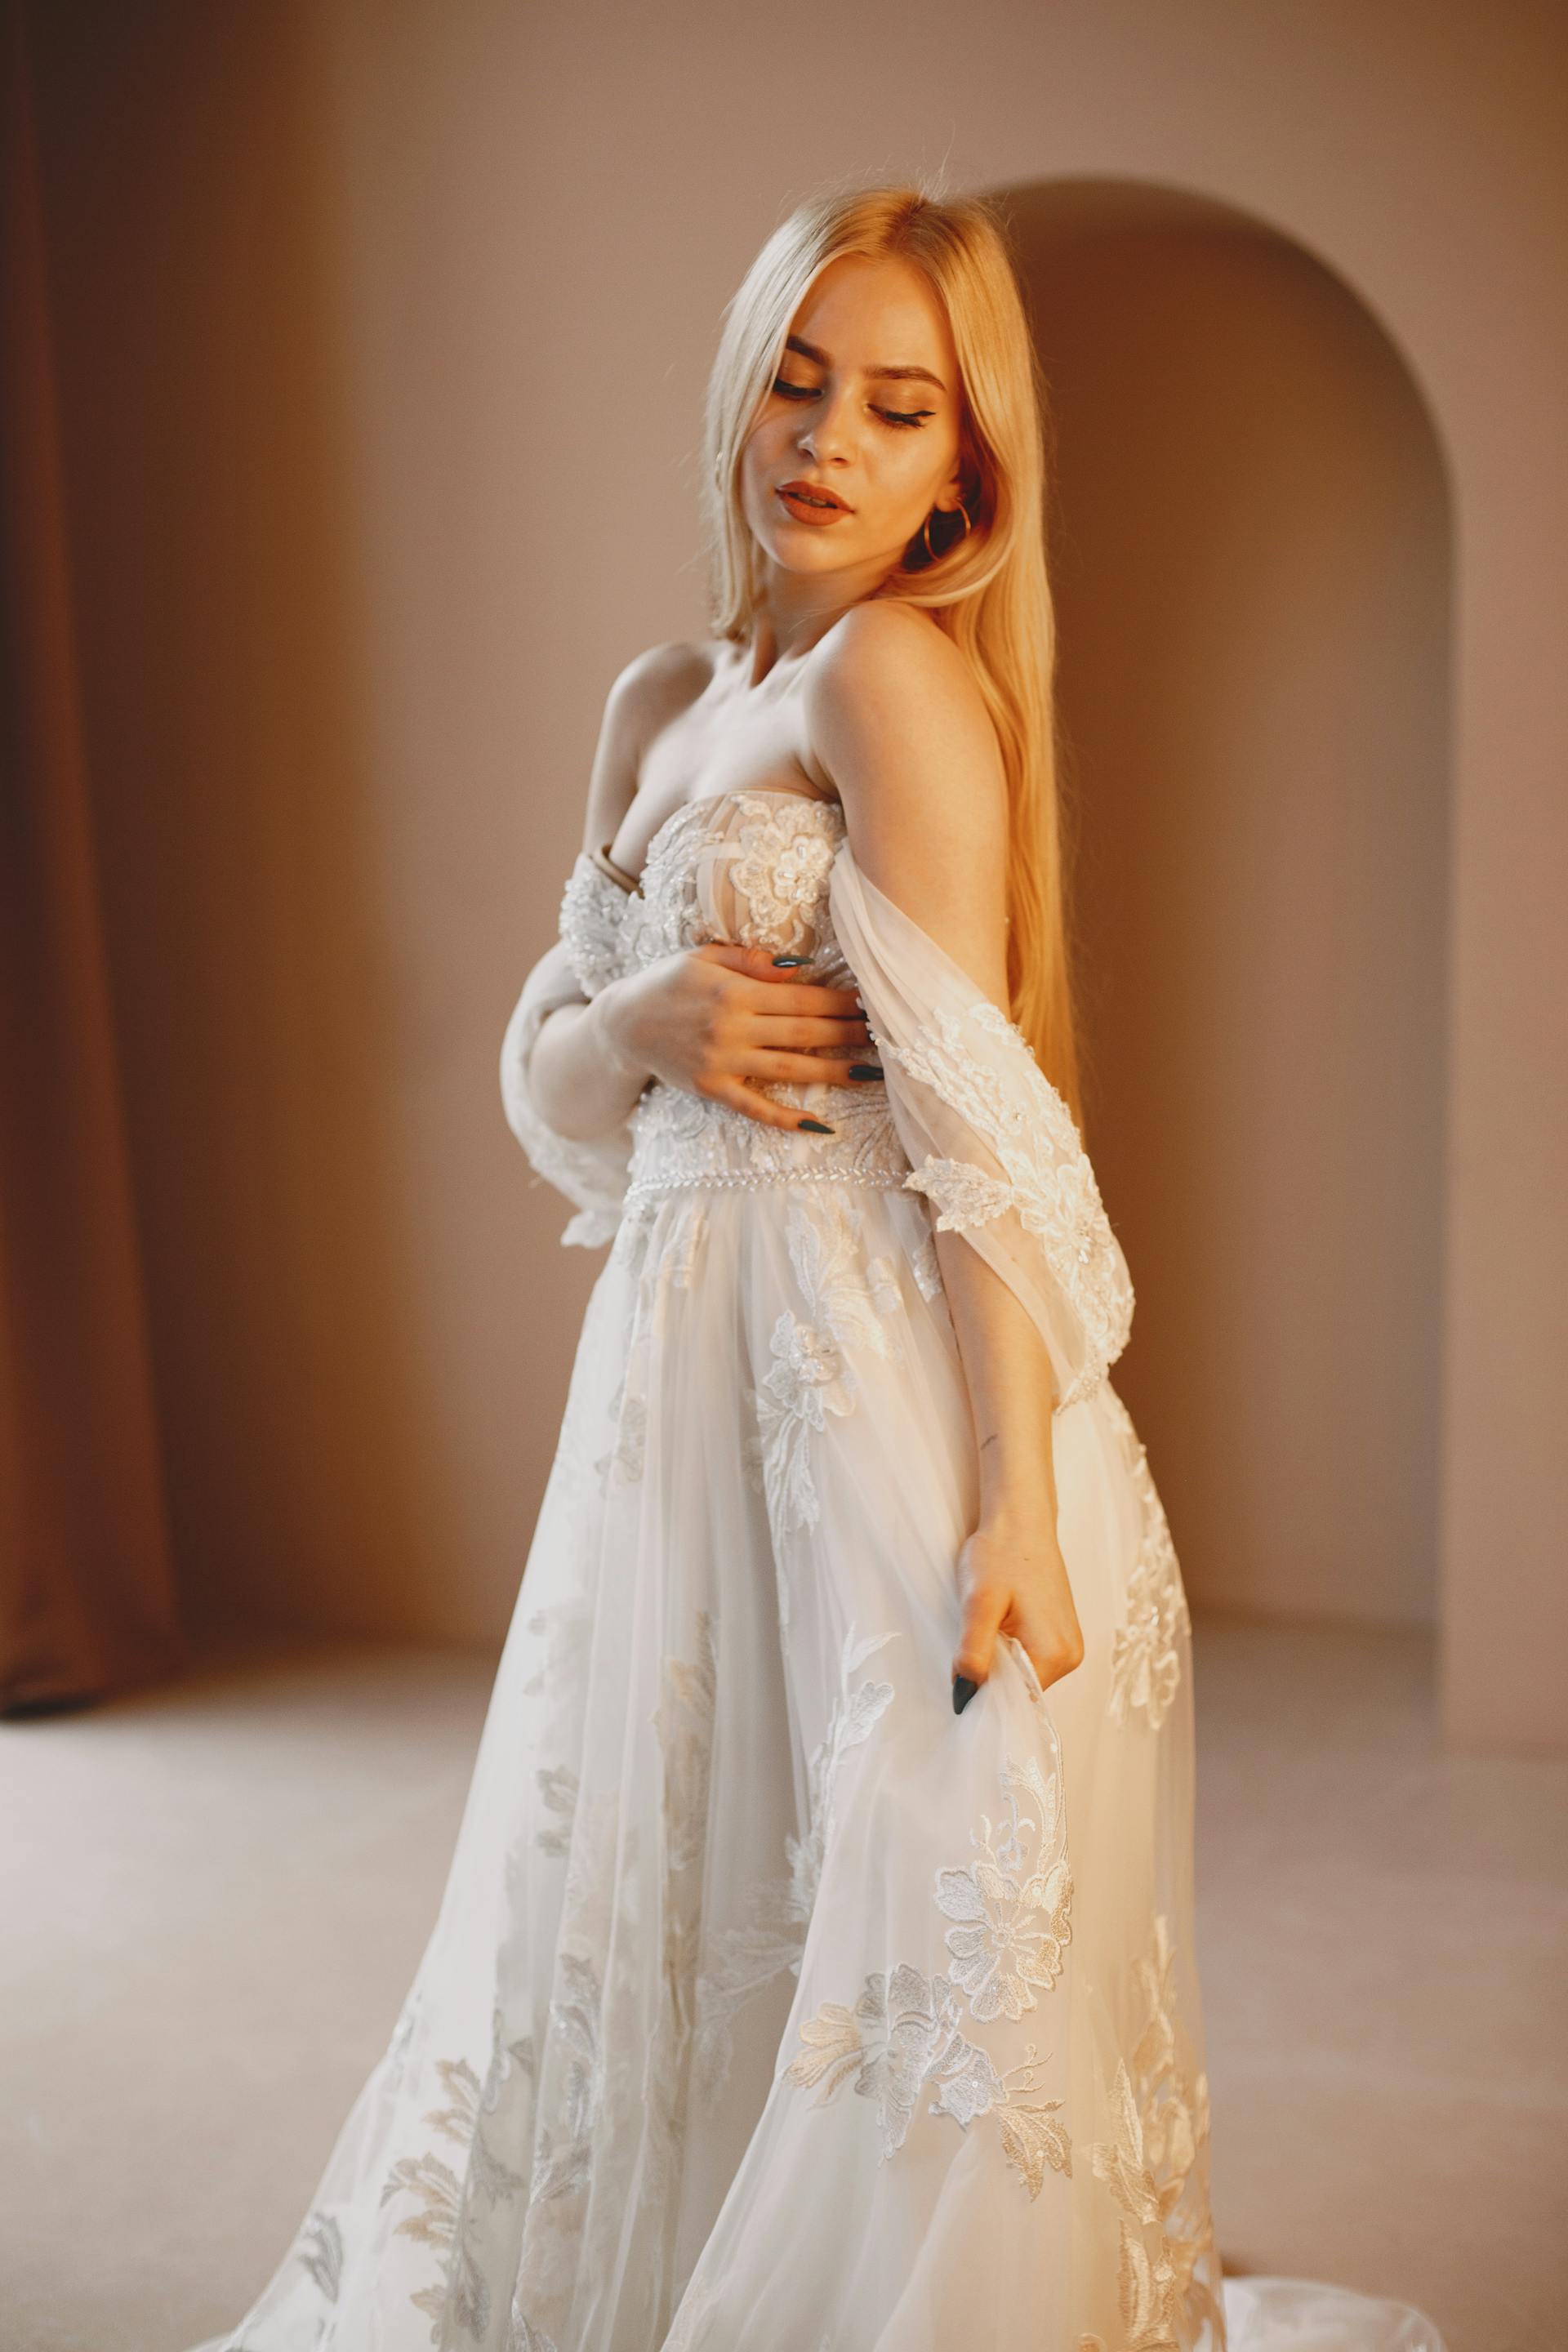 Eine Frau in einem langen weißen Spitzenkleid | Quelle: Pexels